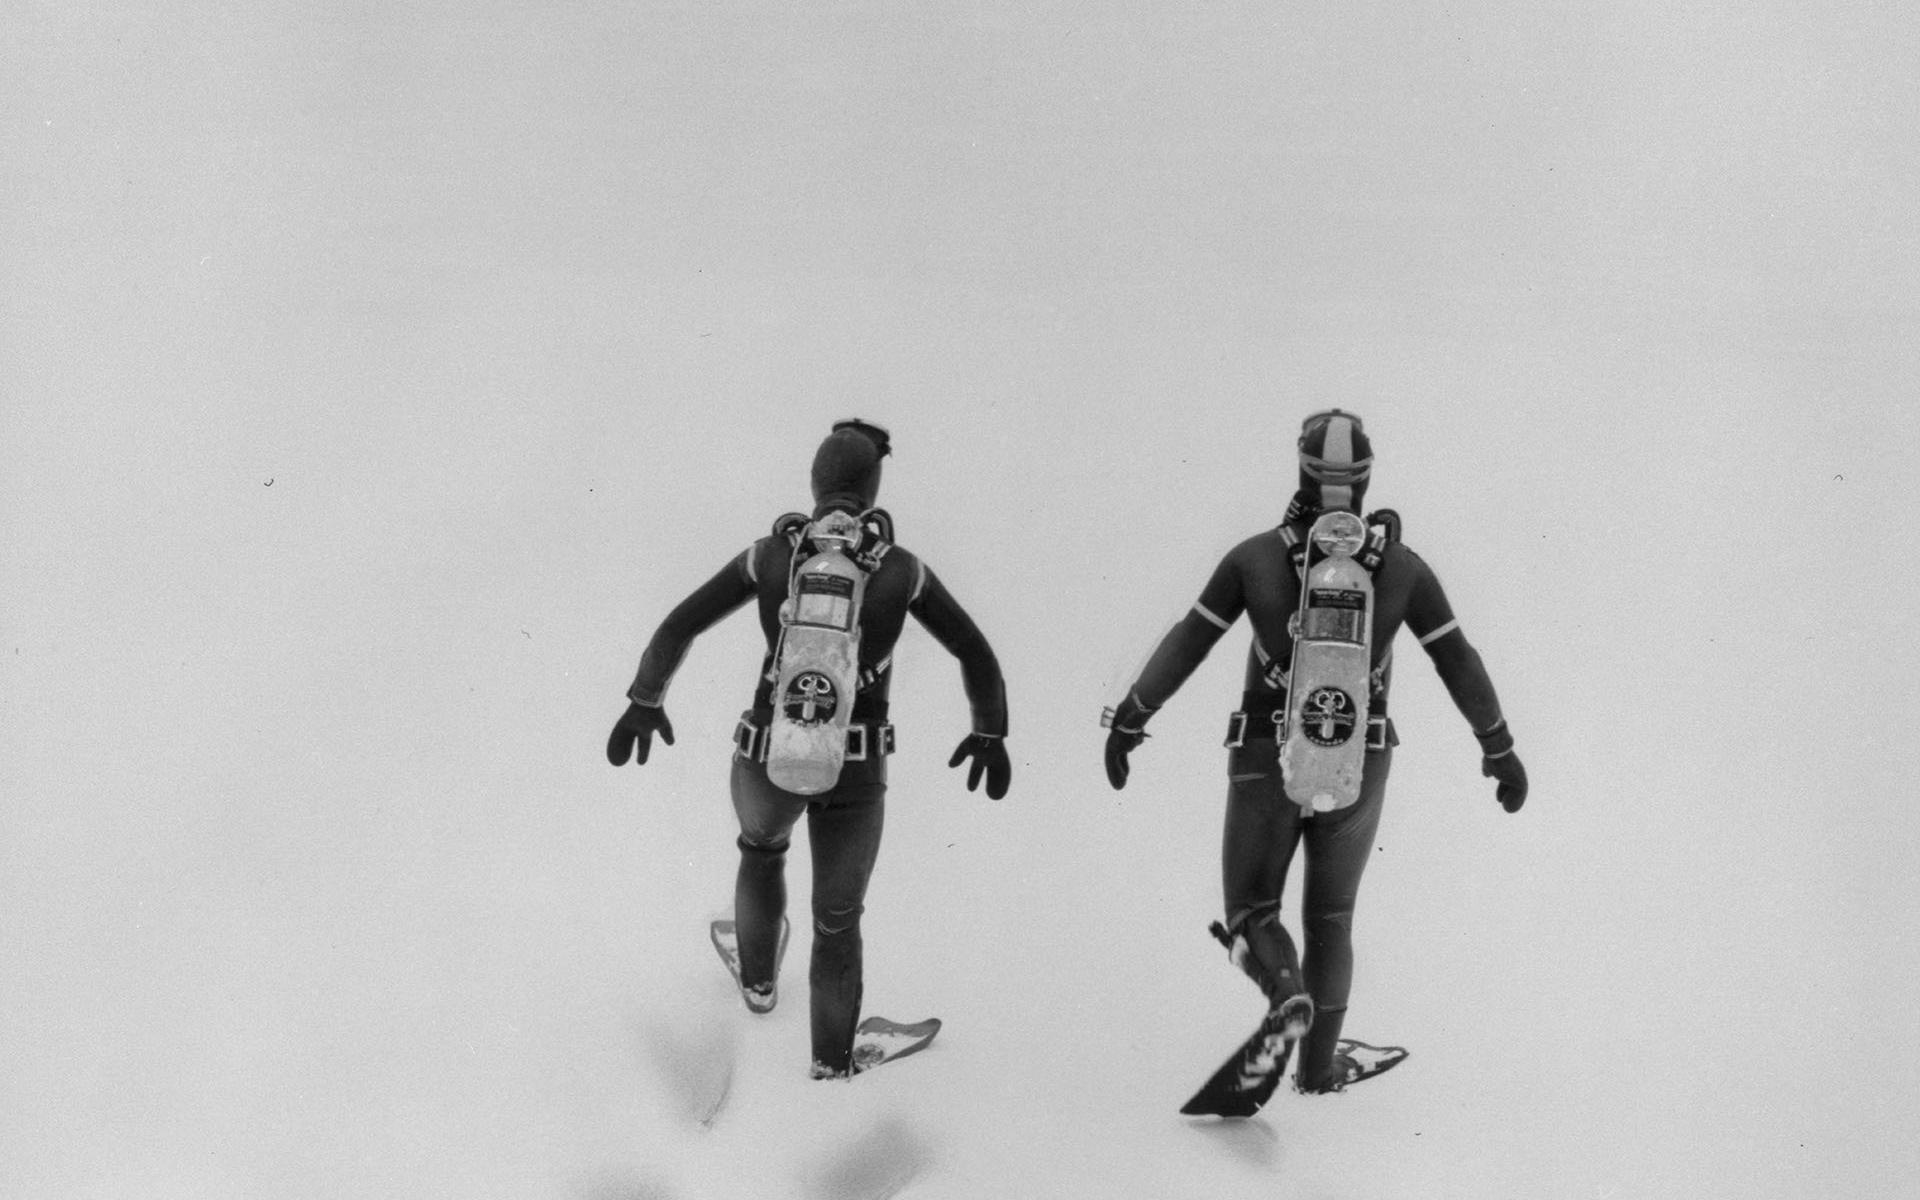 Deux plongeurs vus de dos marchent dans la neige.